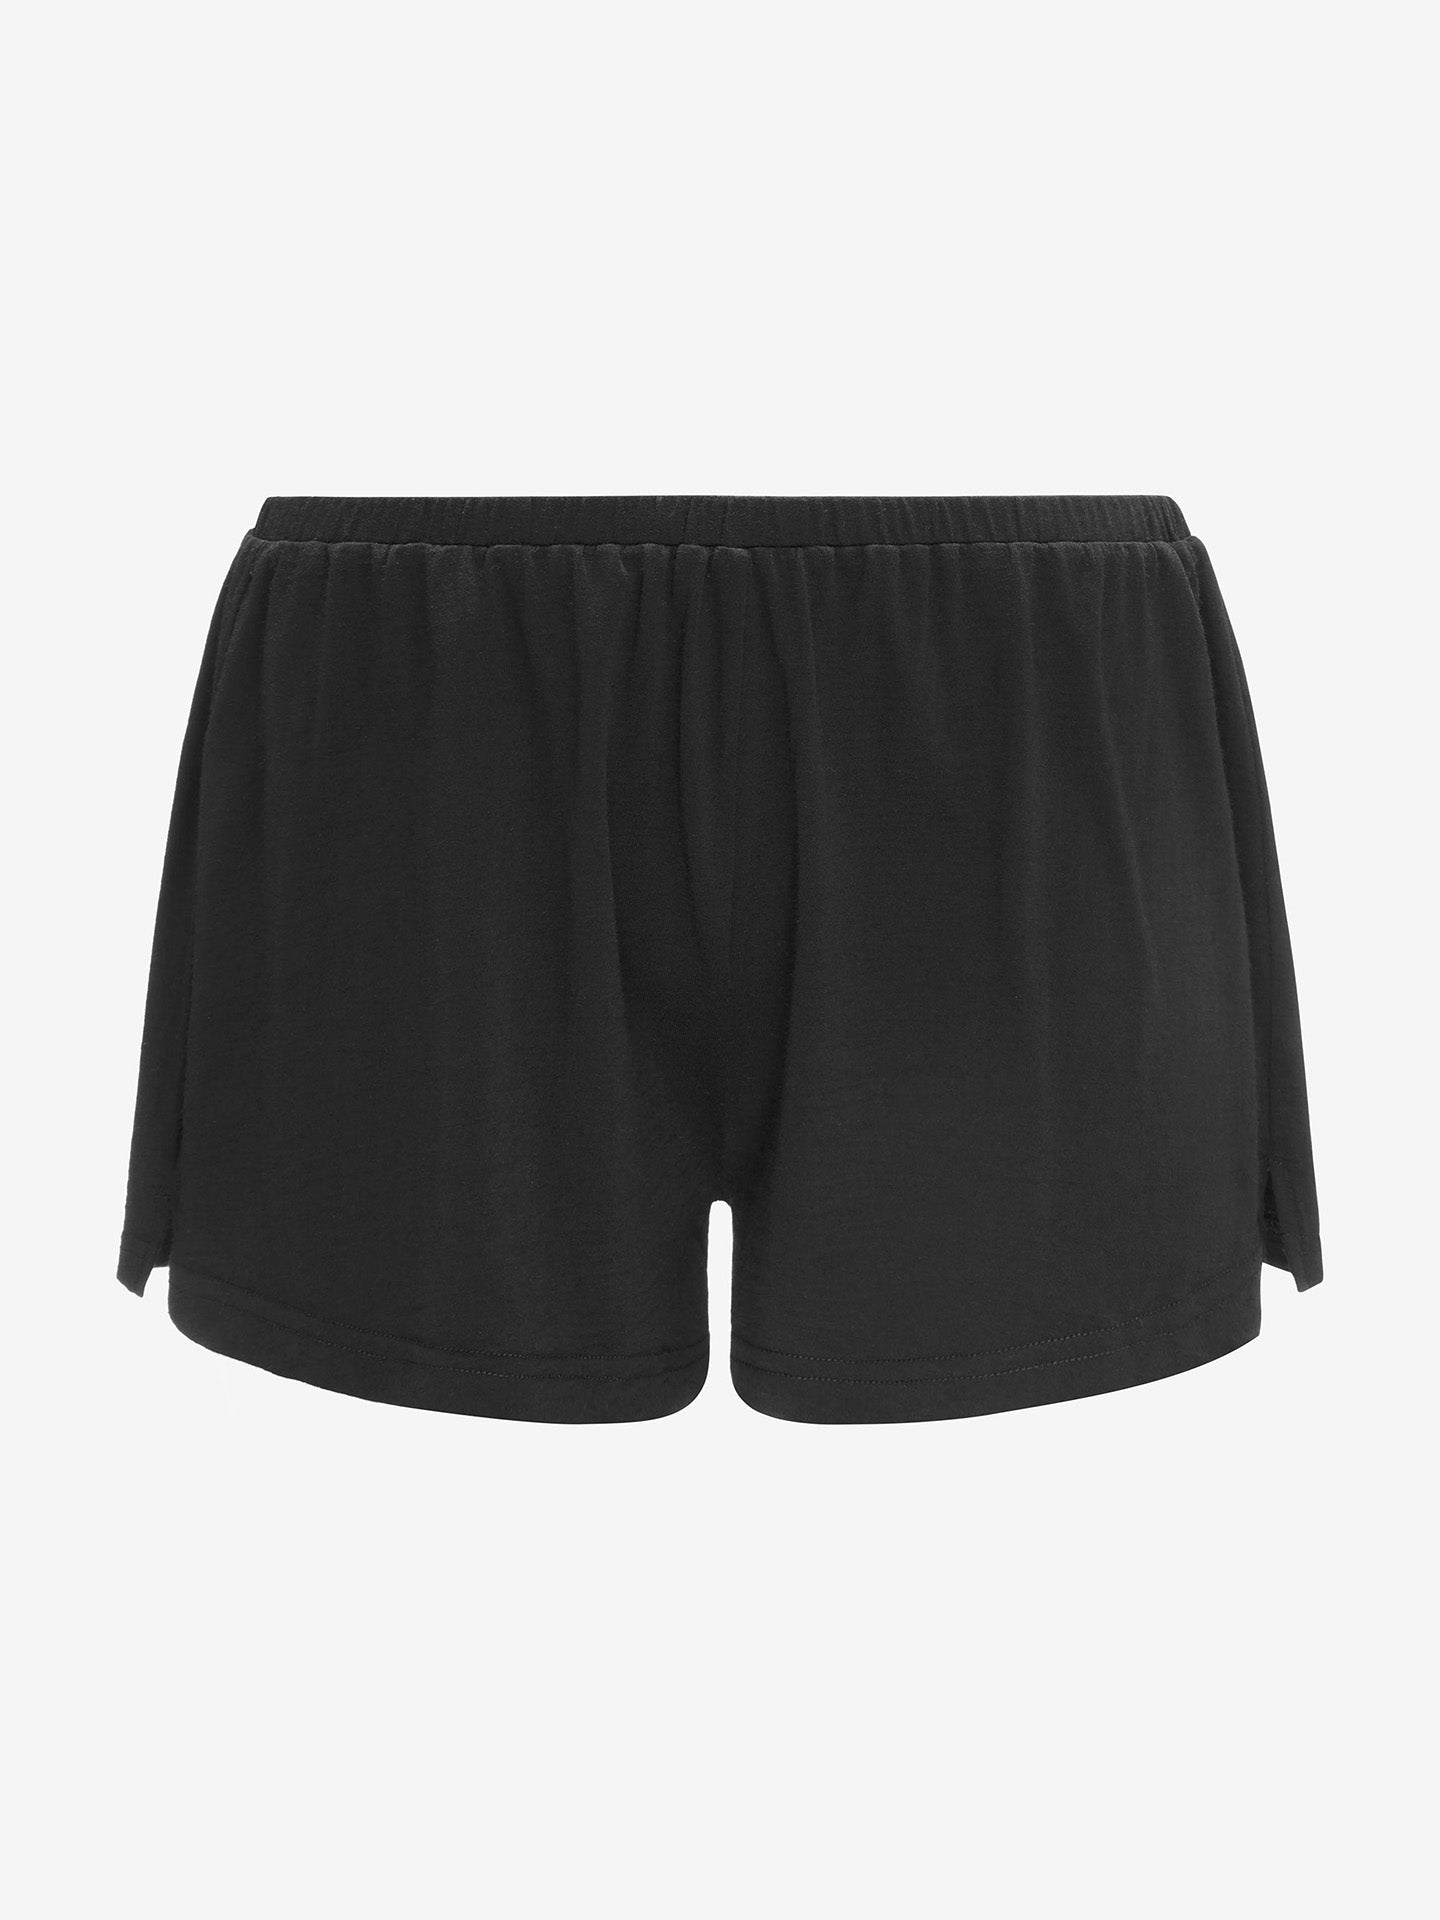 Women's Premium Shorts- Black - Jolie Noire